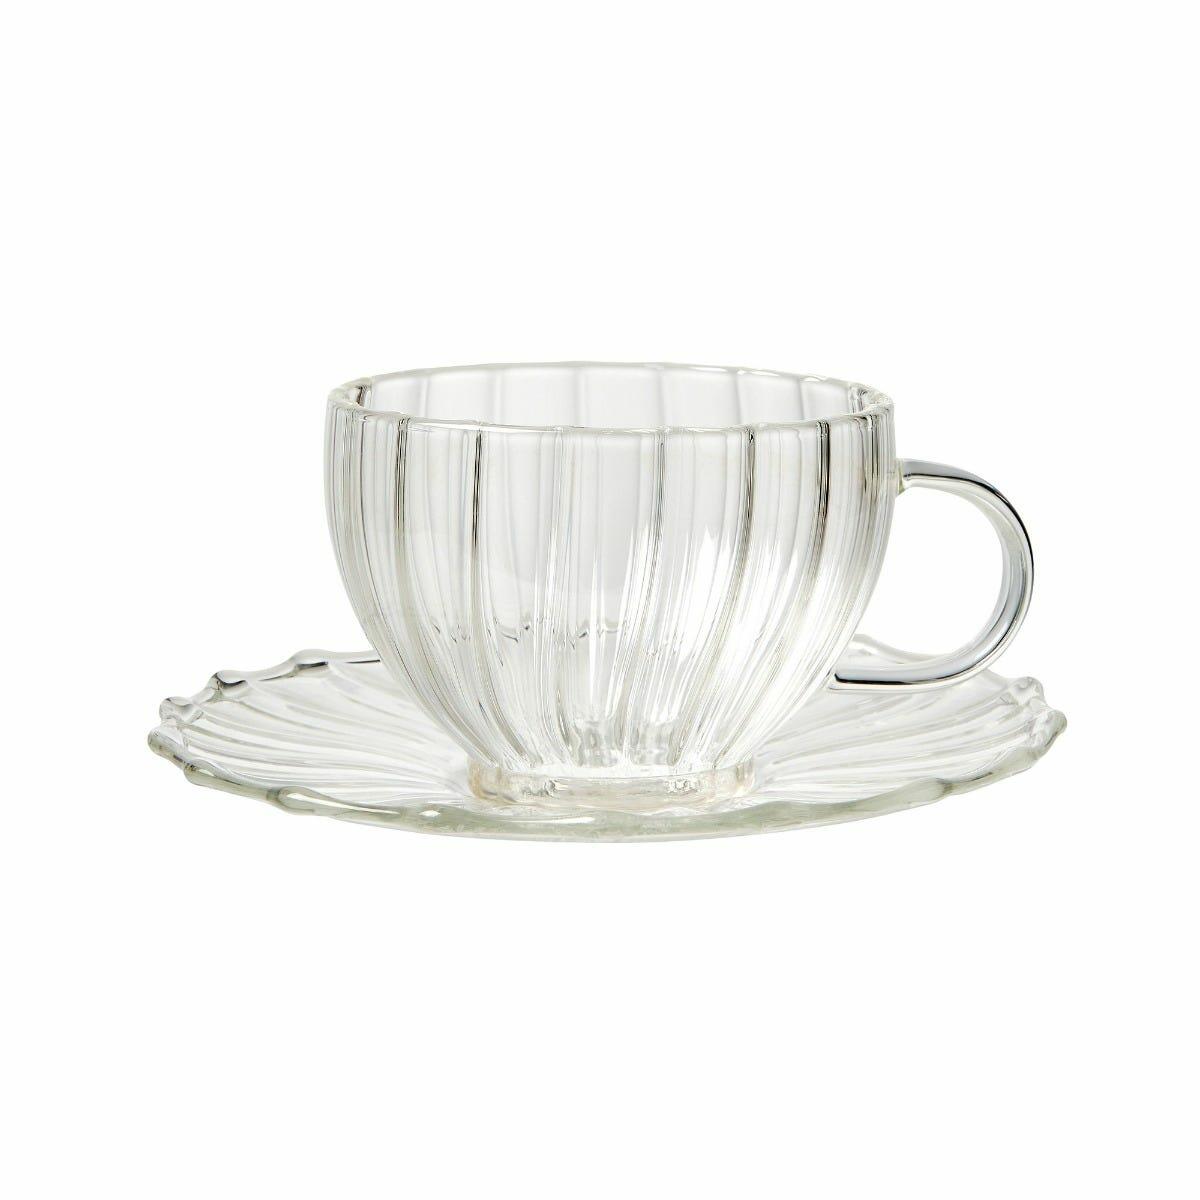 Fortnum & Mason Elegant Glass Teacup & Saucer